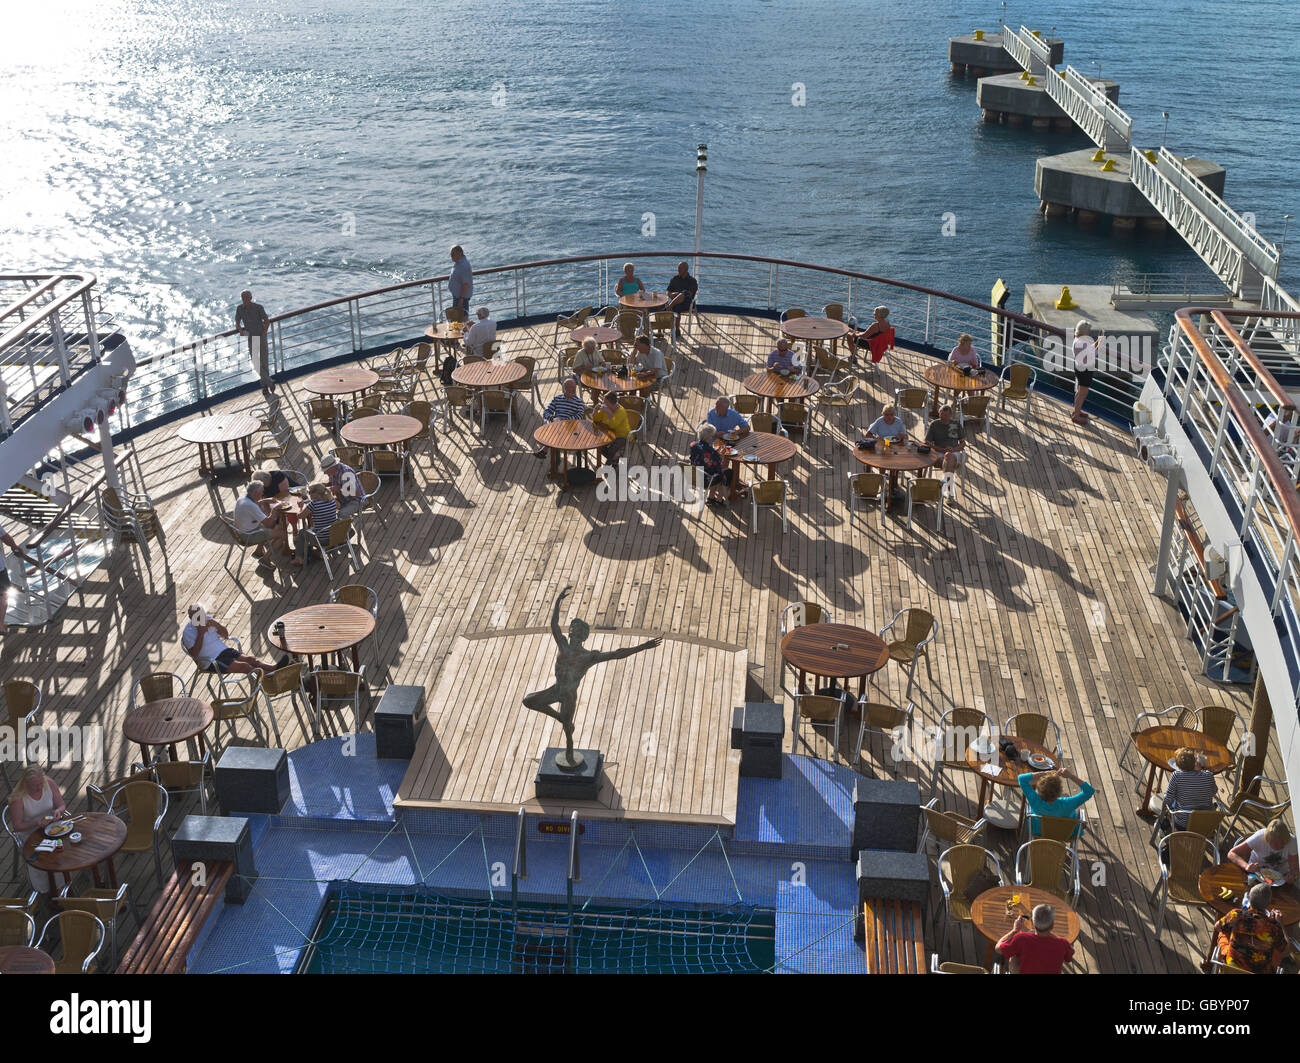 dh Marco Polo Kreuzfahrt Schiff Karibik Aft Deck Passagiere genießen Sie am  Abend die Sonne der Karibik an Bord Menschen liner Stockfotografie - Alamy